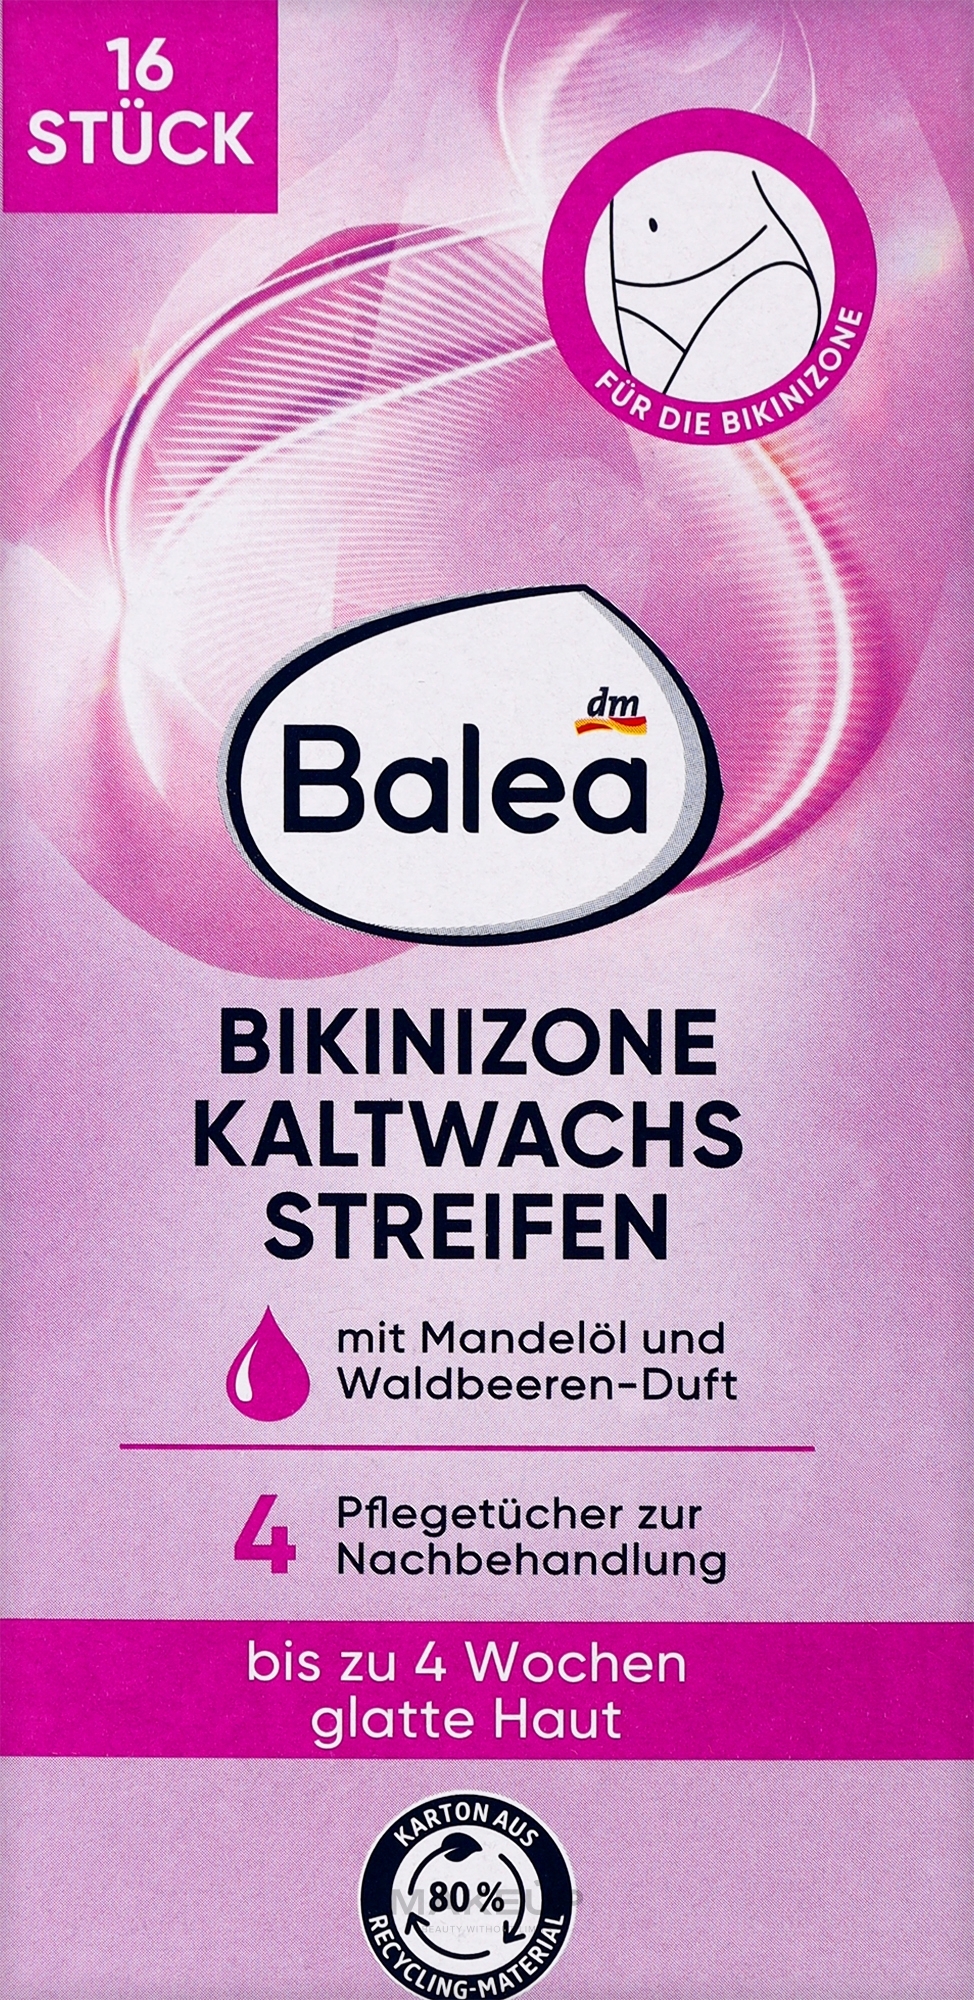 Восковые полоски для депиляции зоны бикини с миндальным маслом - Balea — фото 16шт